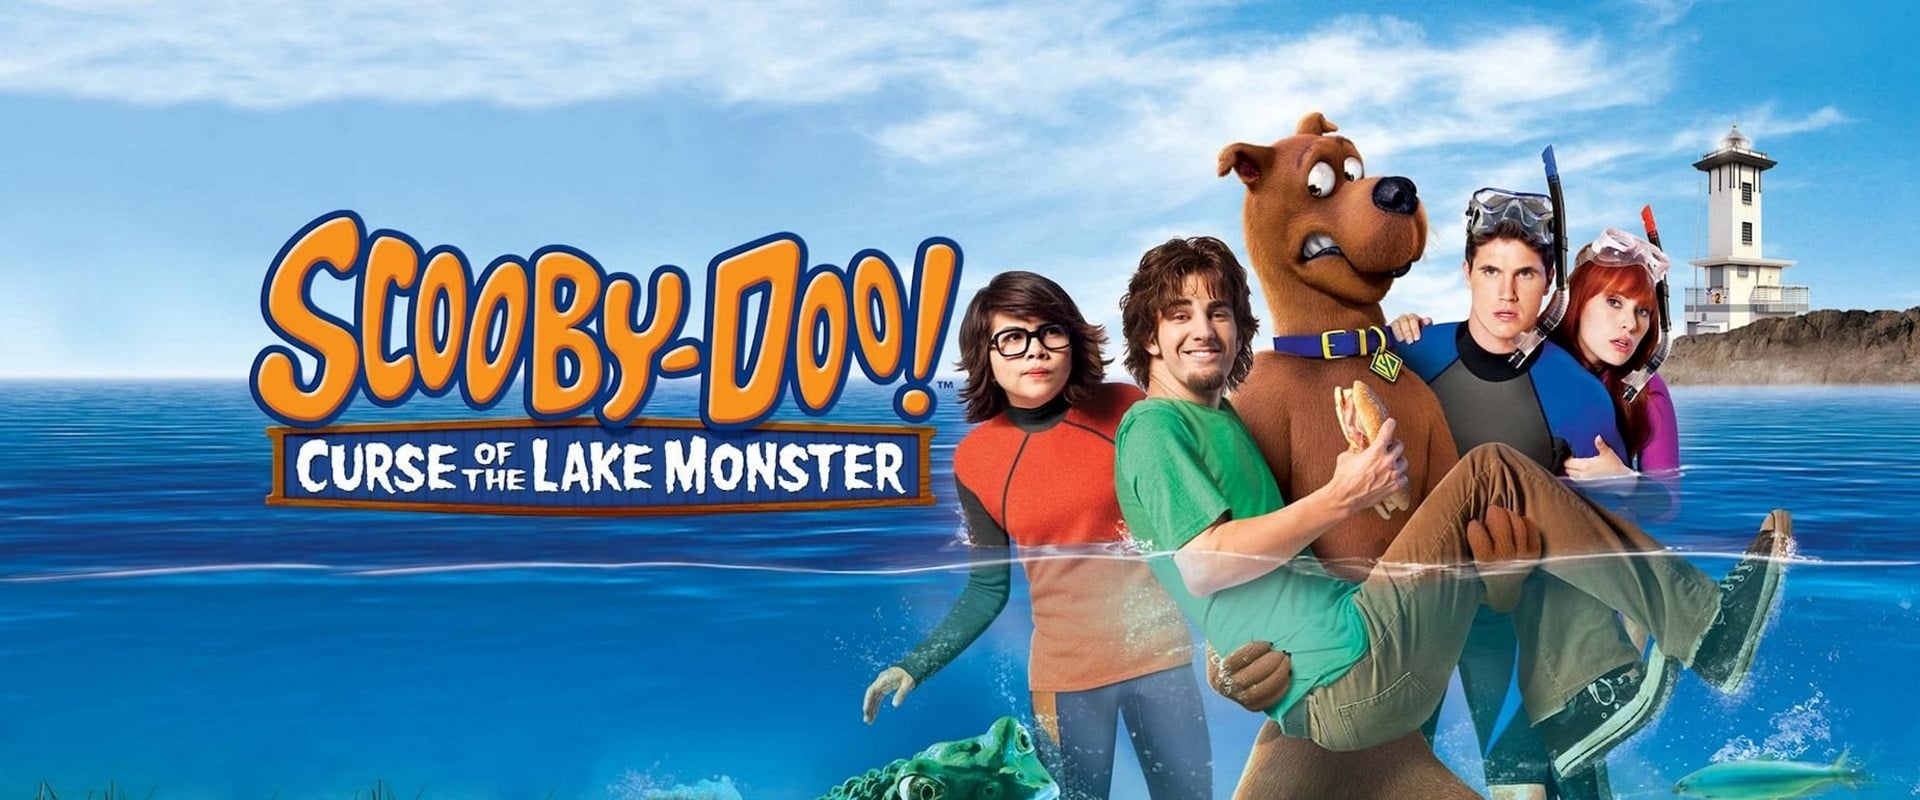 Scooby-Doo! A Maldição do Monstro do Lago